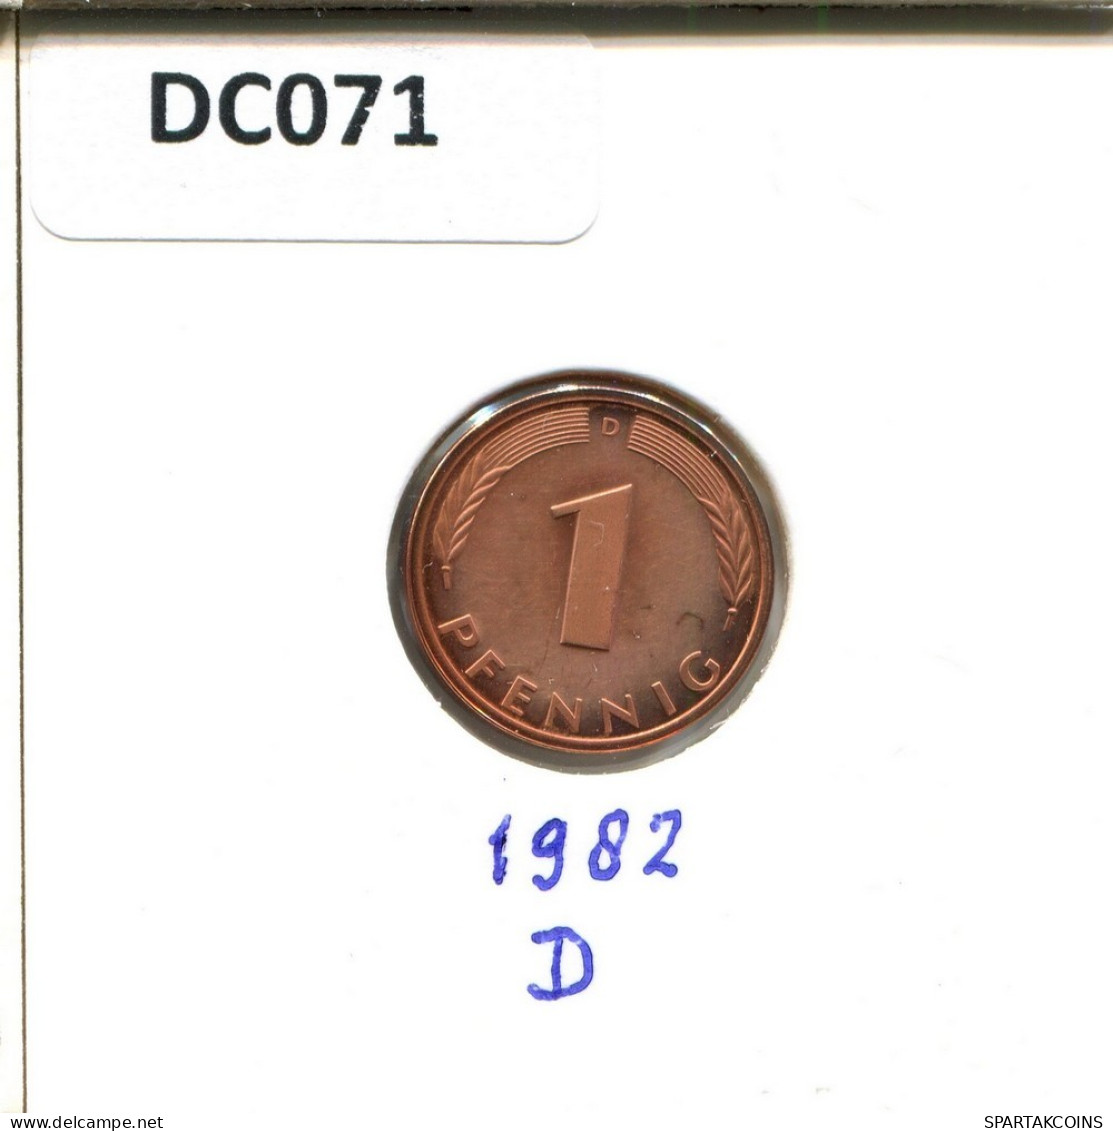 1 PFENNIG 1982 D BRD DEUTSCHLAND Münze GERMANY #DC071.D.A - 1 Pfennig